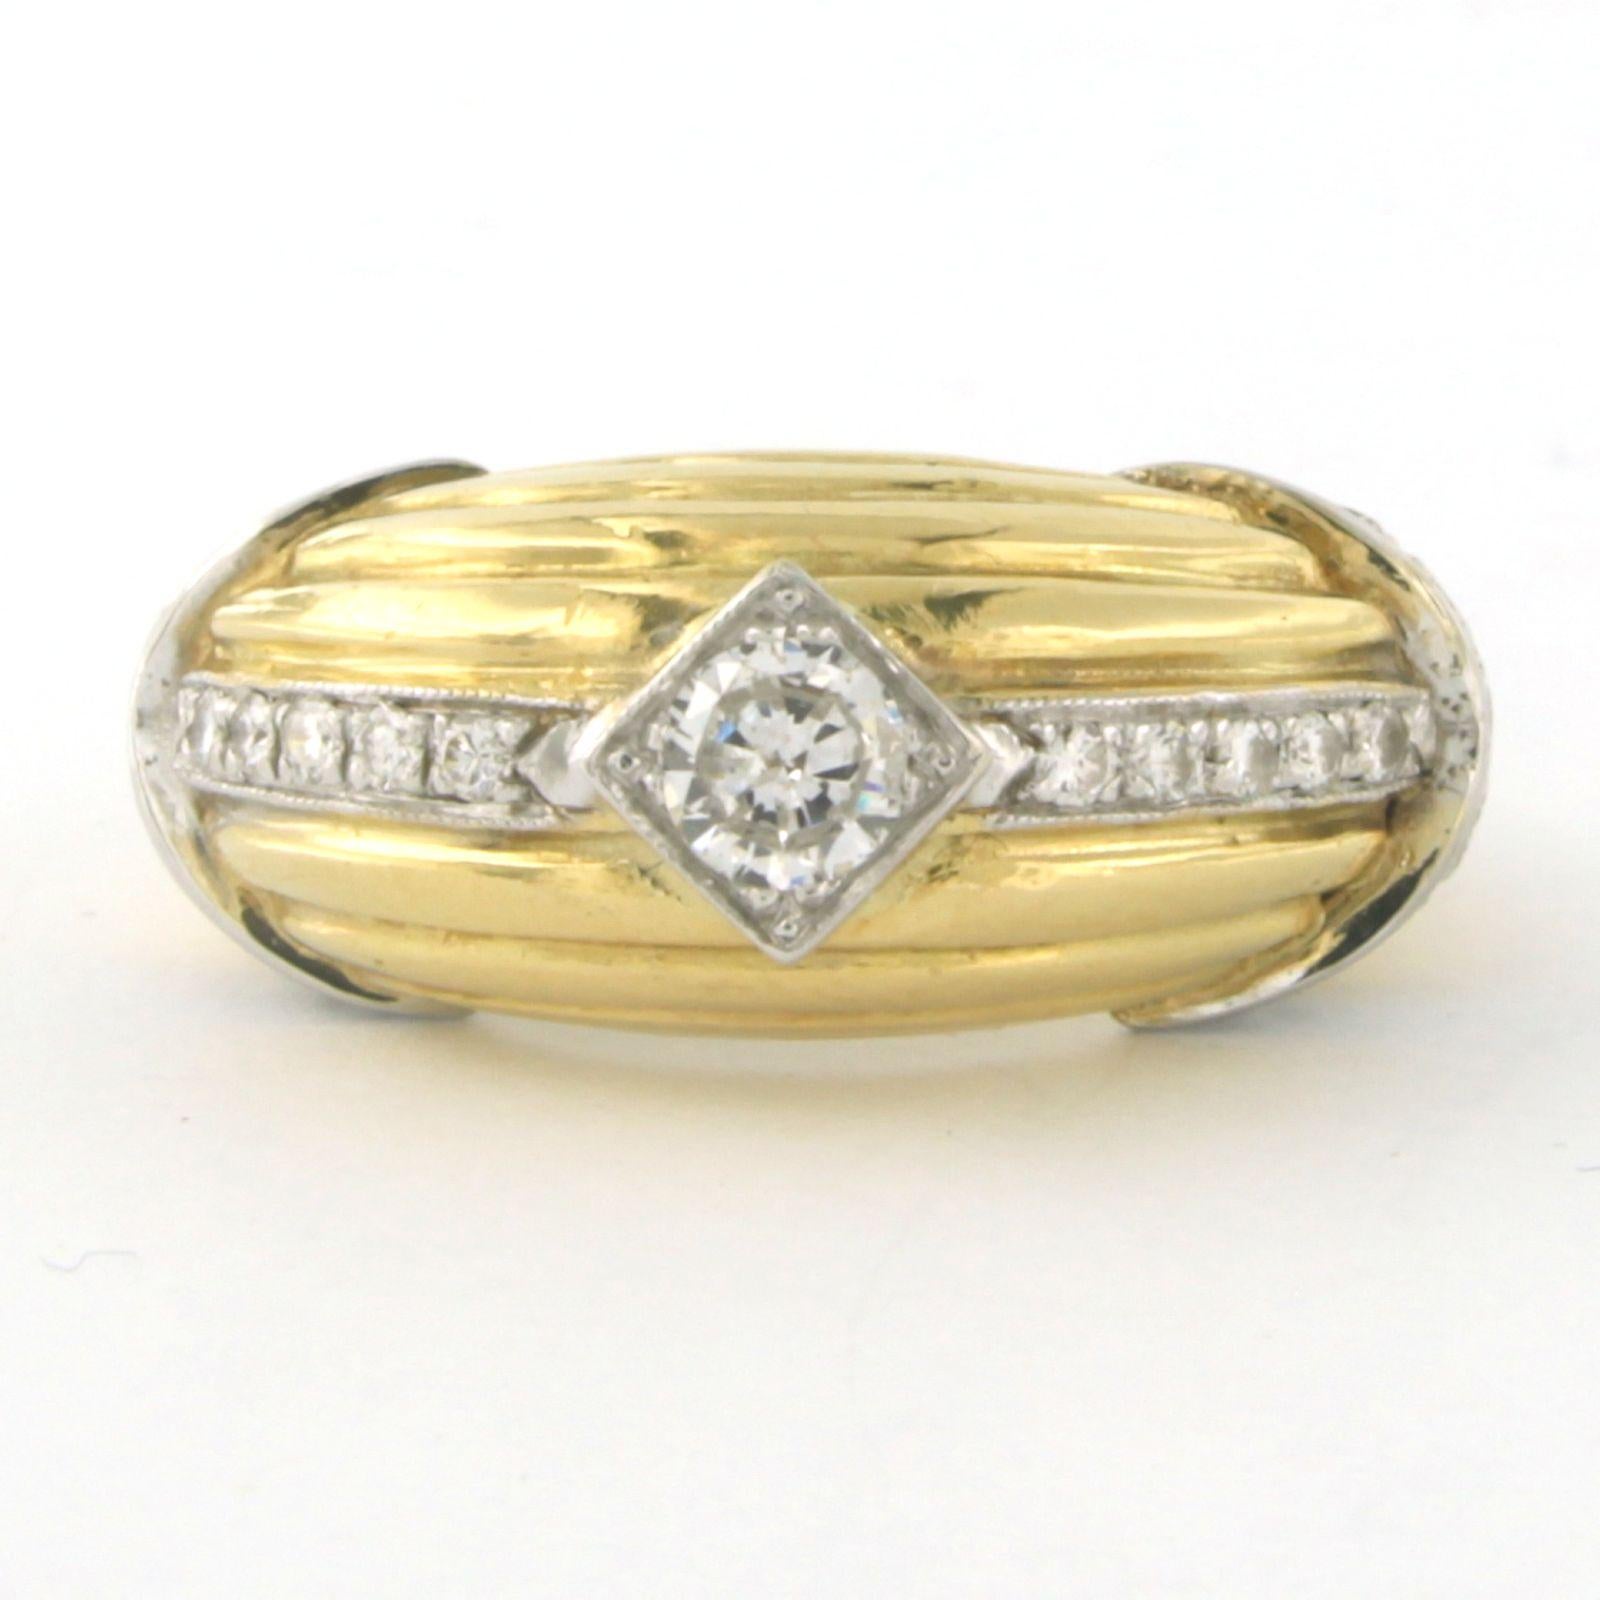 Bague bicolore 18 carats avec diamant taille brillant 0.80 ct - F/G - VS/SI - taille U.S. 6 - EU. 16.5(52)

description détaillée

le haut de l'anneau mesure 1,0 cm de large et 7,7 mm de haut

Taille de l'anneau : U.S. 6 - EU. 16.5(52), la bague